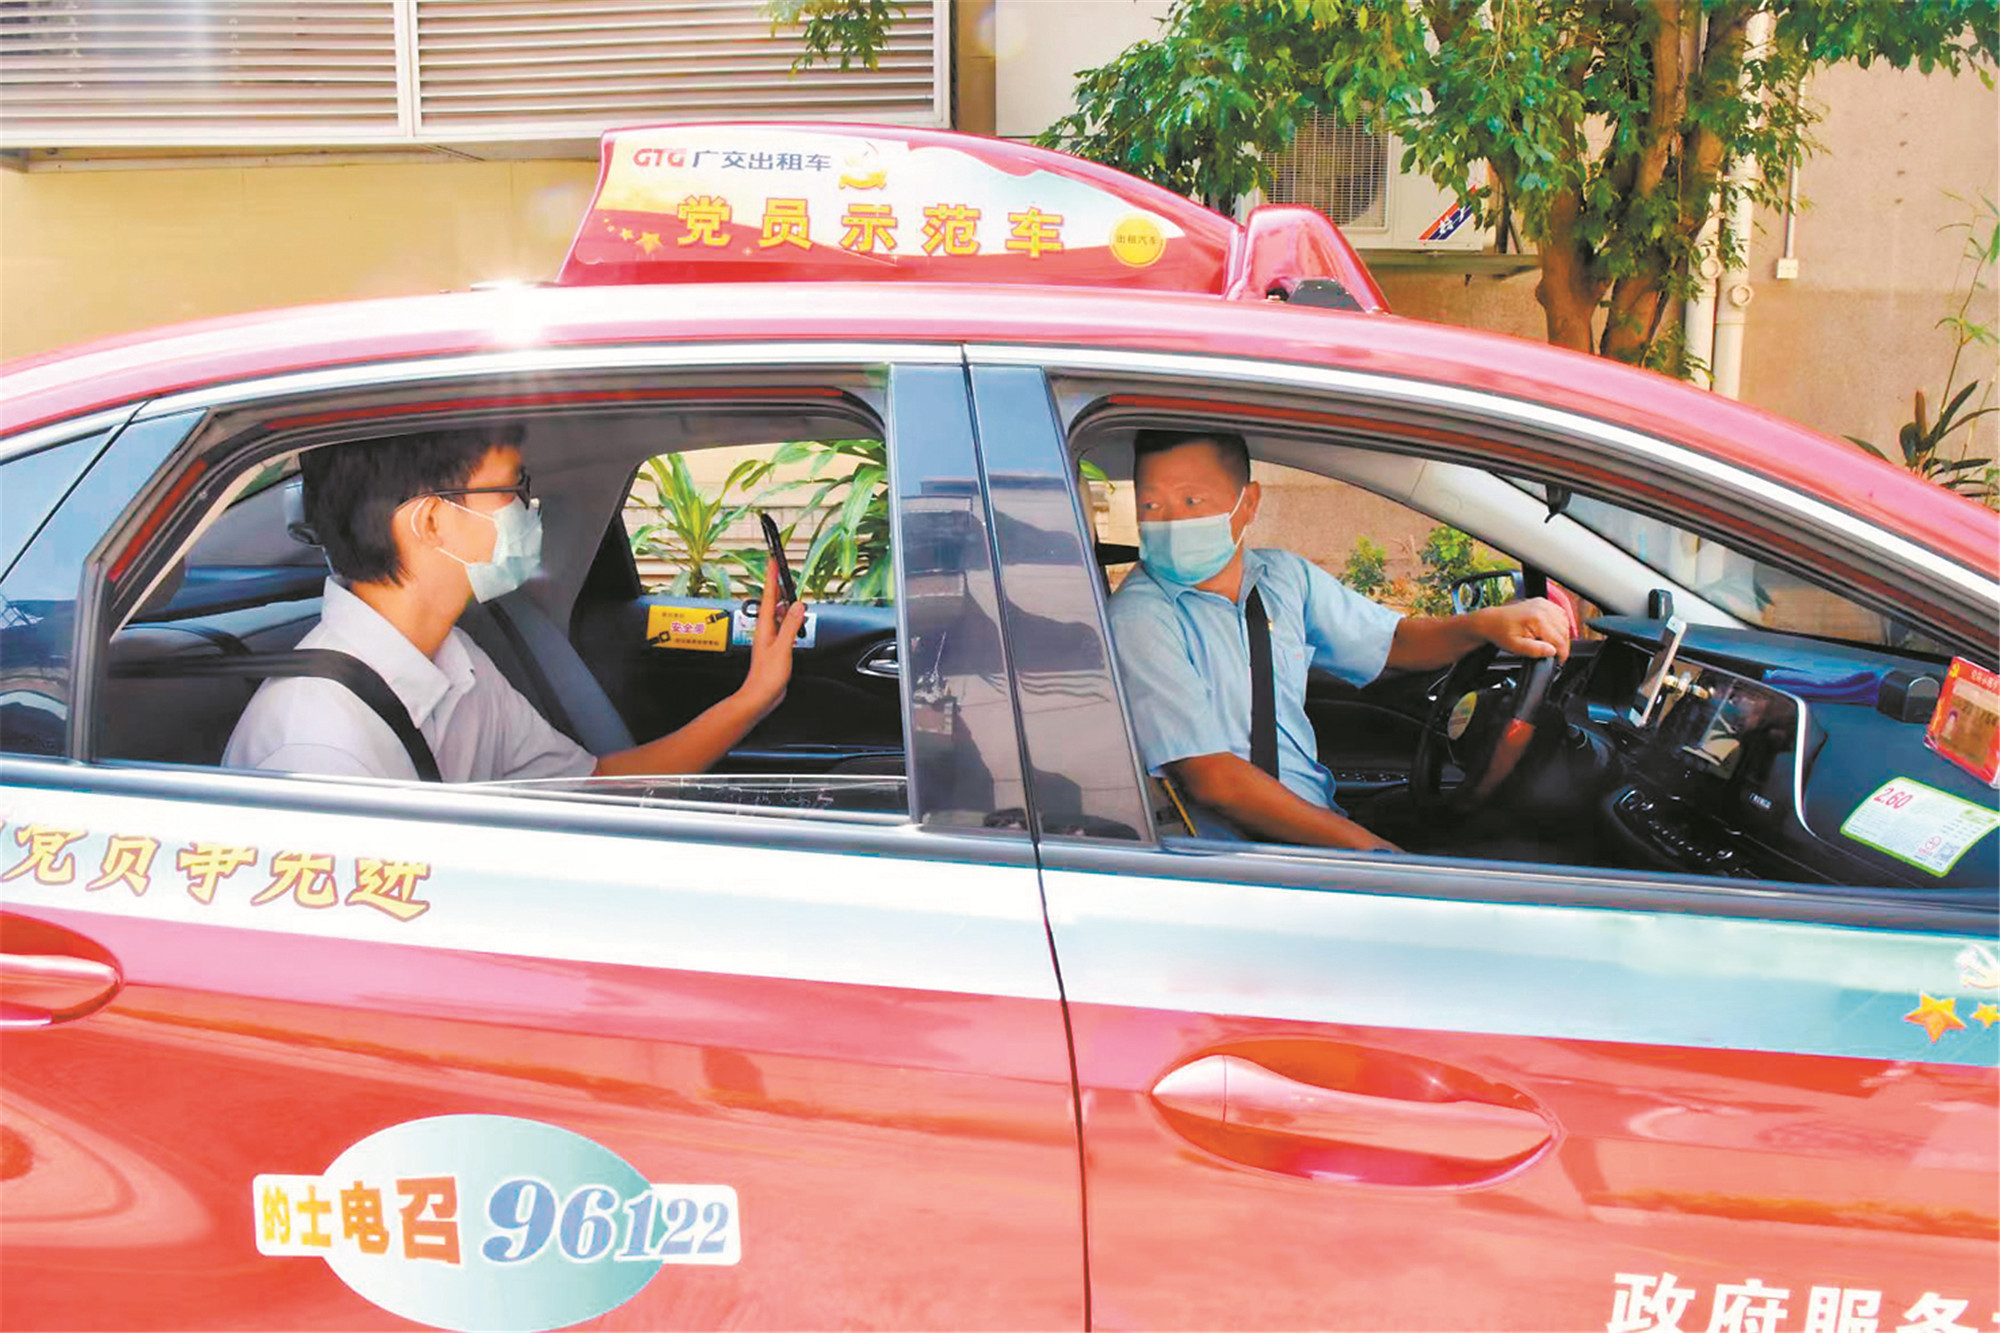 出租车防控措施升级。（来源：广州日报）